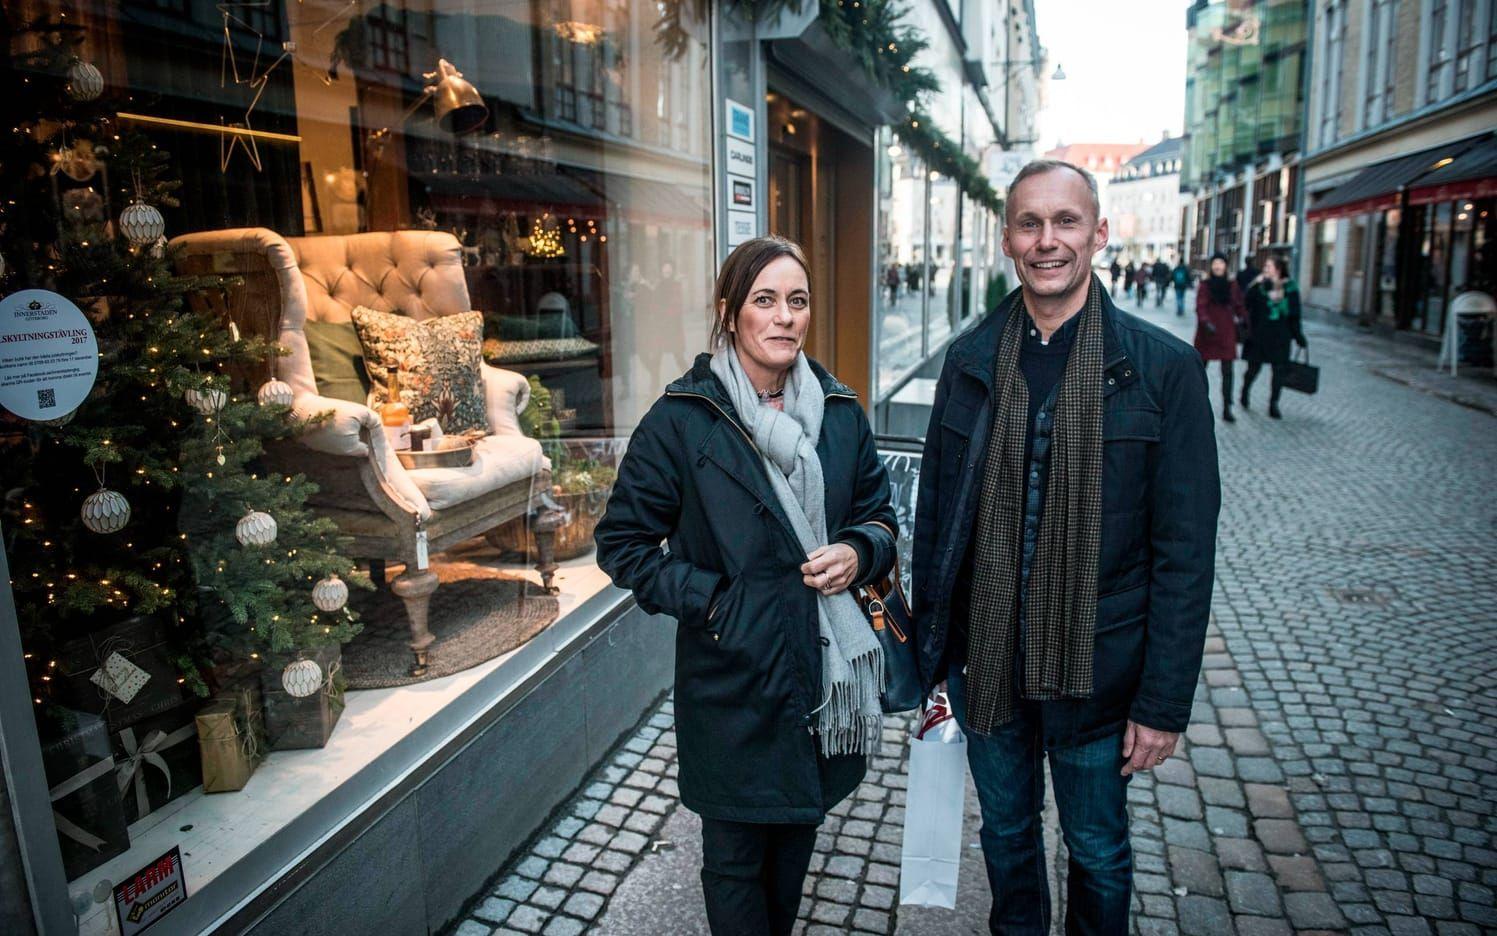 På genomresa. Jörgen och Åsa Olofsson är i Göteborg för att besöka parets son. De gillar butikernas jultskyltning. "Ja, det fick ju oss att gå in i alla fall", säger Åsa. Bild: Olof Ohlsson